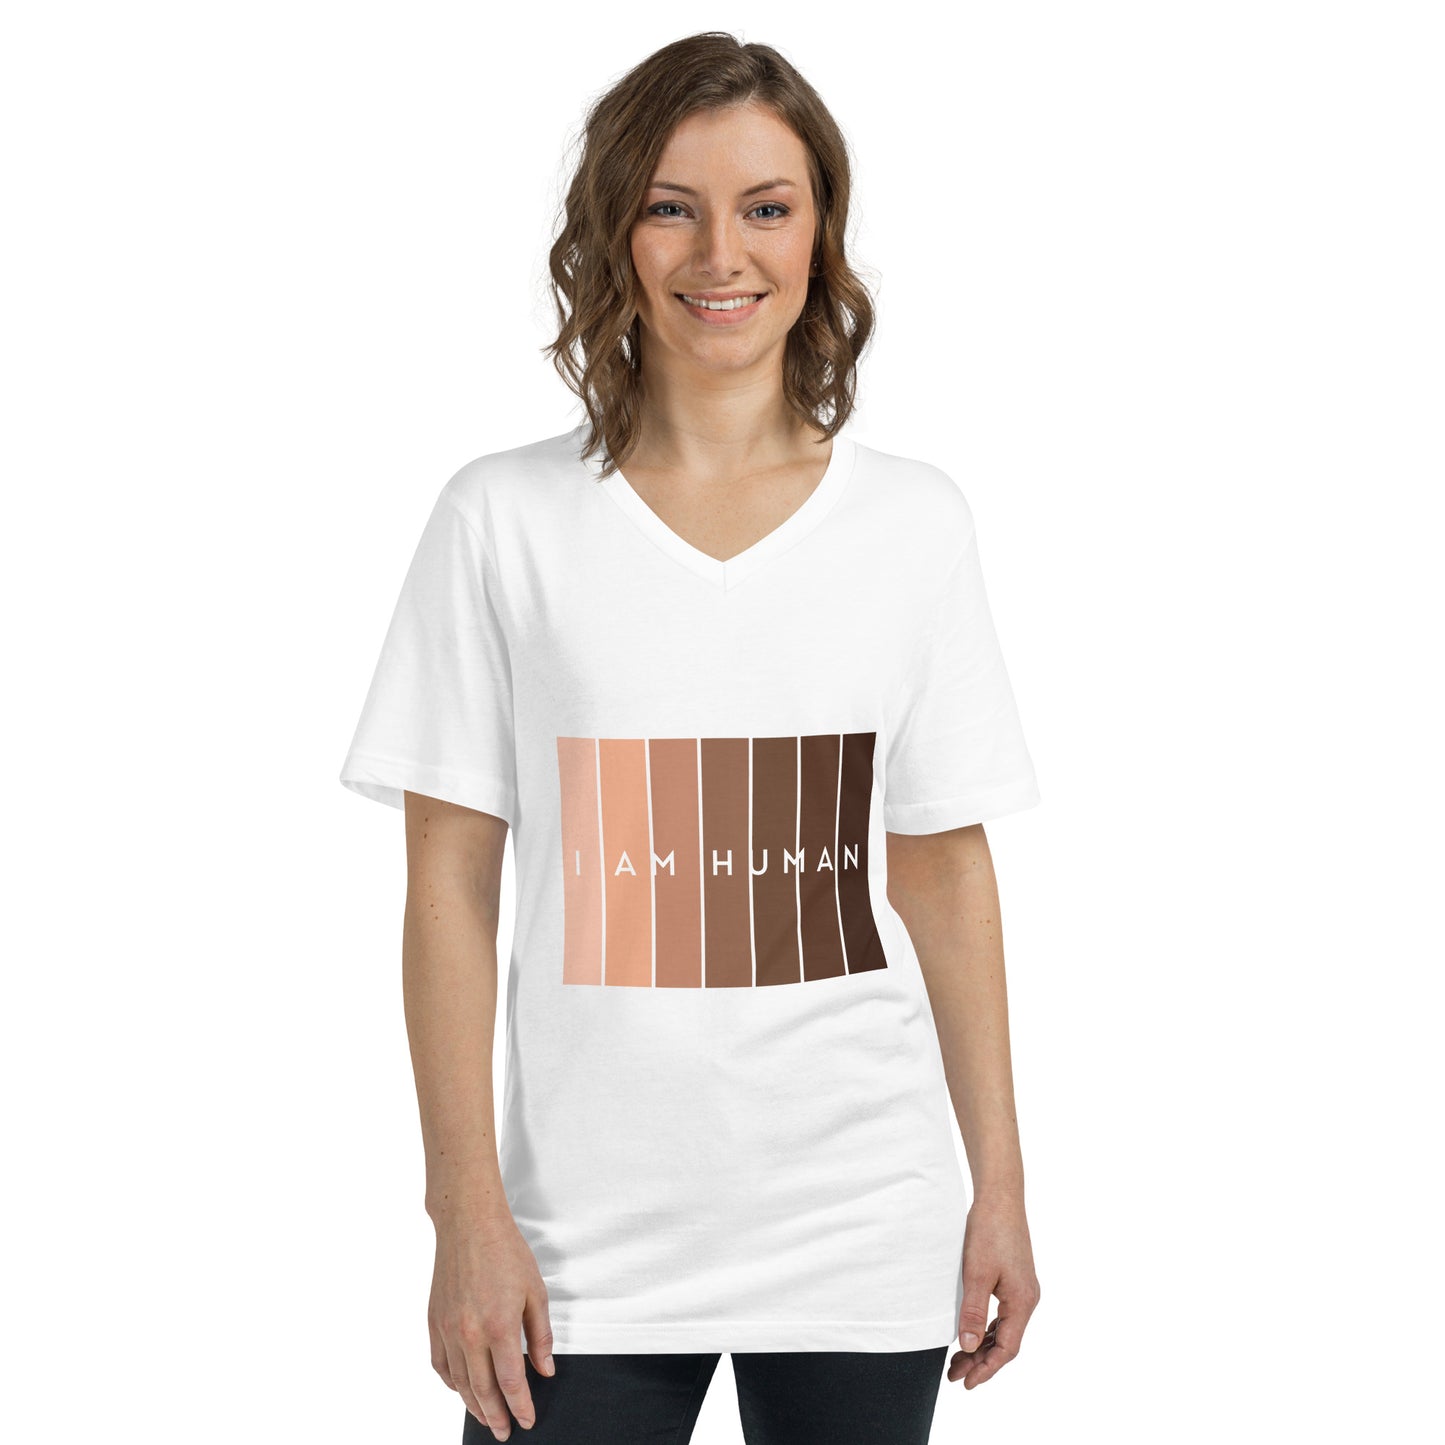 I Am Human Unisex Short Sleeve V-Neck T-Shirt